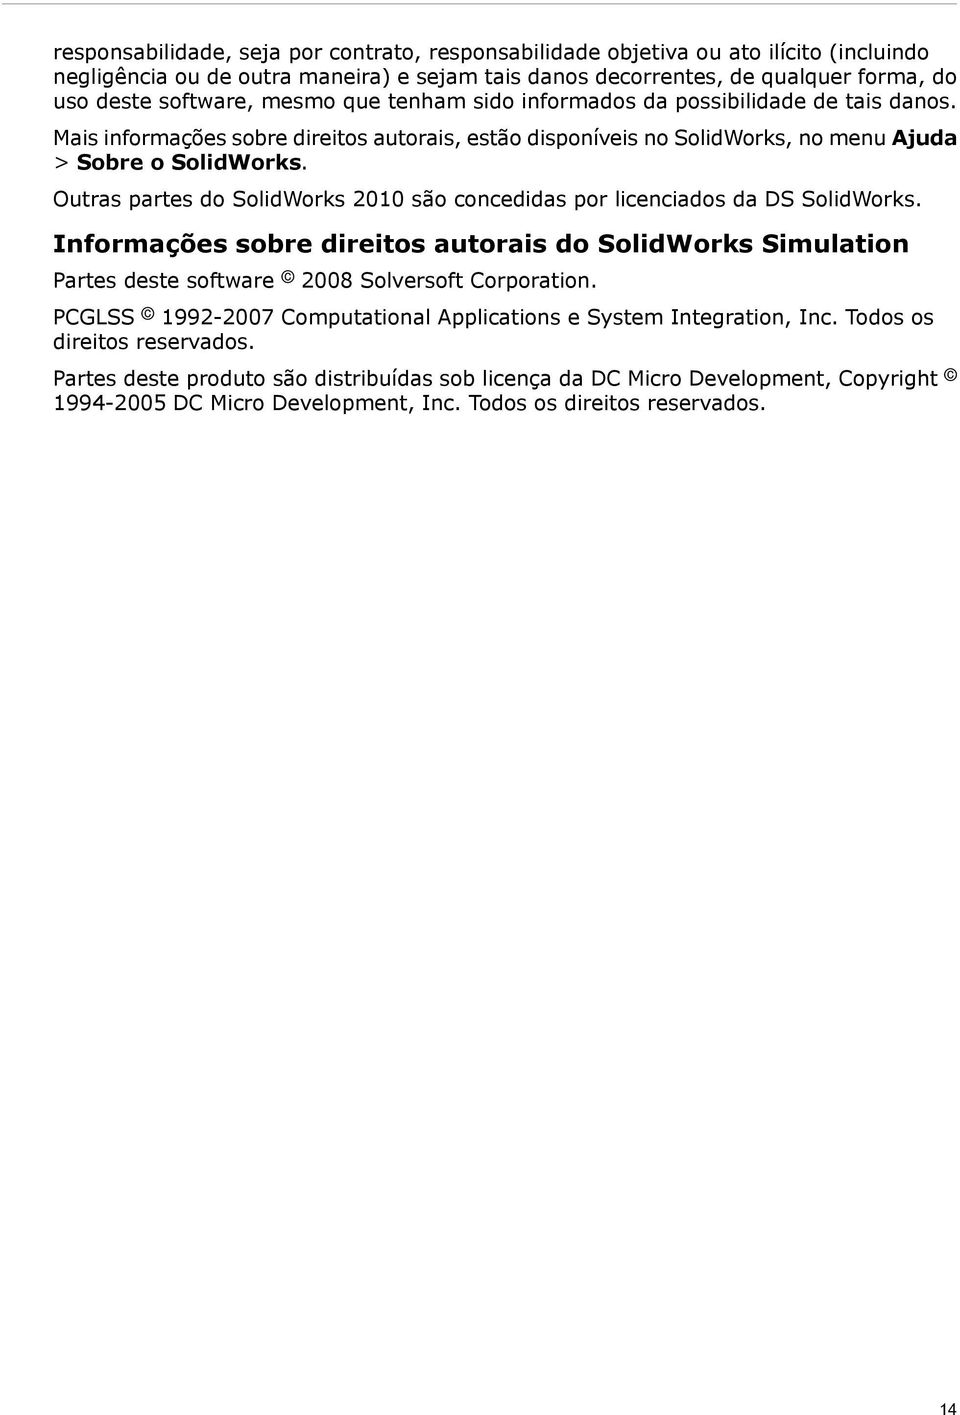 Outras partes do SolidWorks 2010 são concedidas por licenciados da DS SolidWorks. Informações sobre direitos autorais do SolidWorks Simulation Partes deste software 2008 Solversoft Corporation.